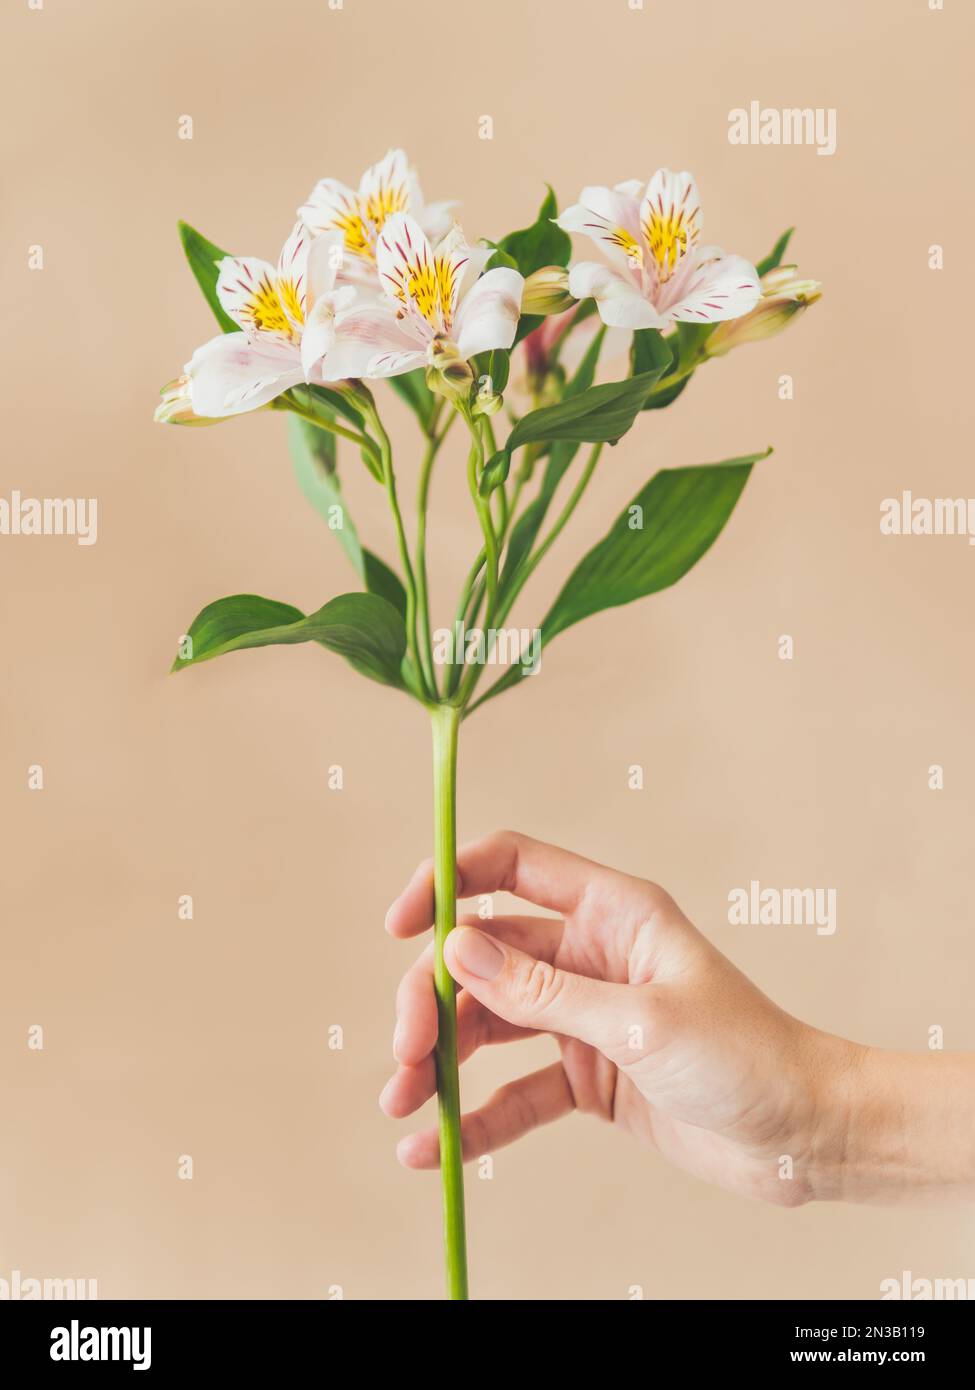 Die Frau hält weiße Alstroemeria-Blume. Frische blühende Pflanze auf beigefarbenem Hintergrund. Zerbrechliche Frühlingsblume. Stockfoto